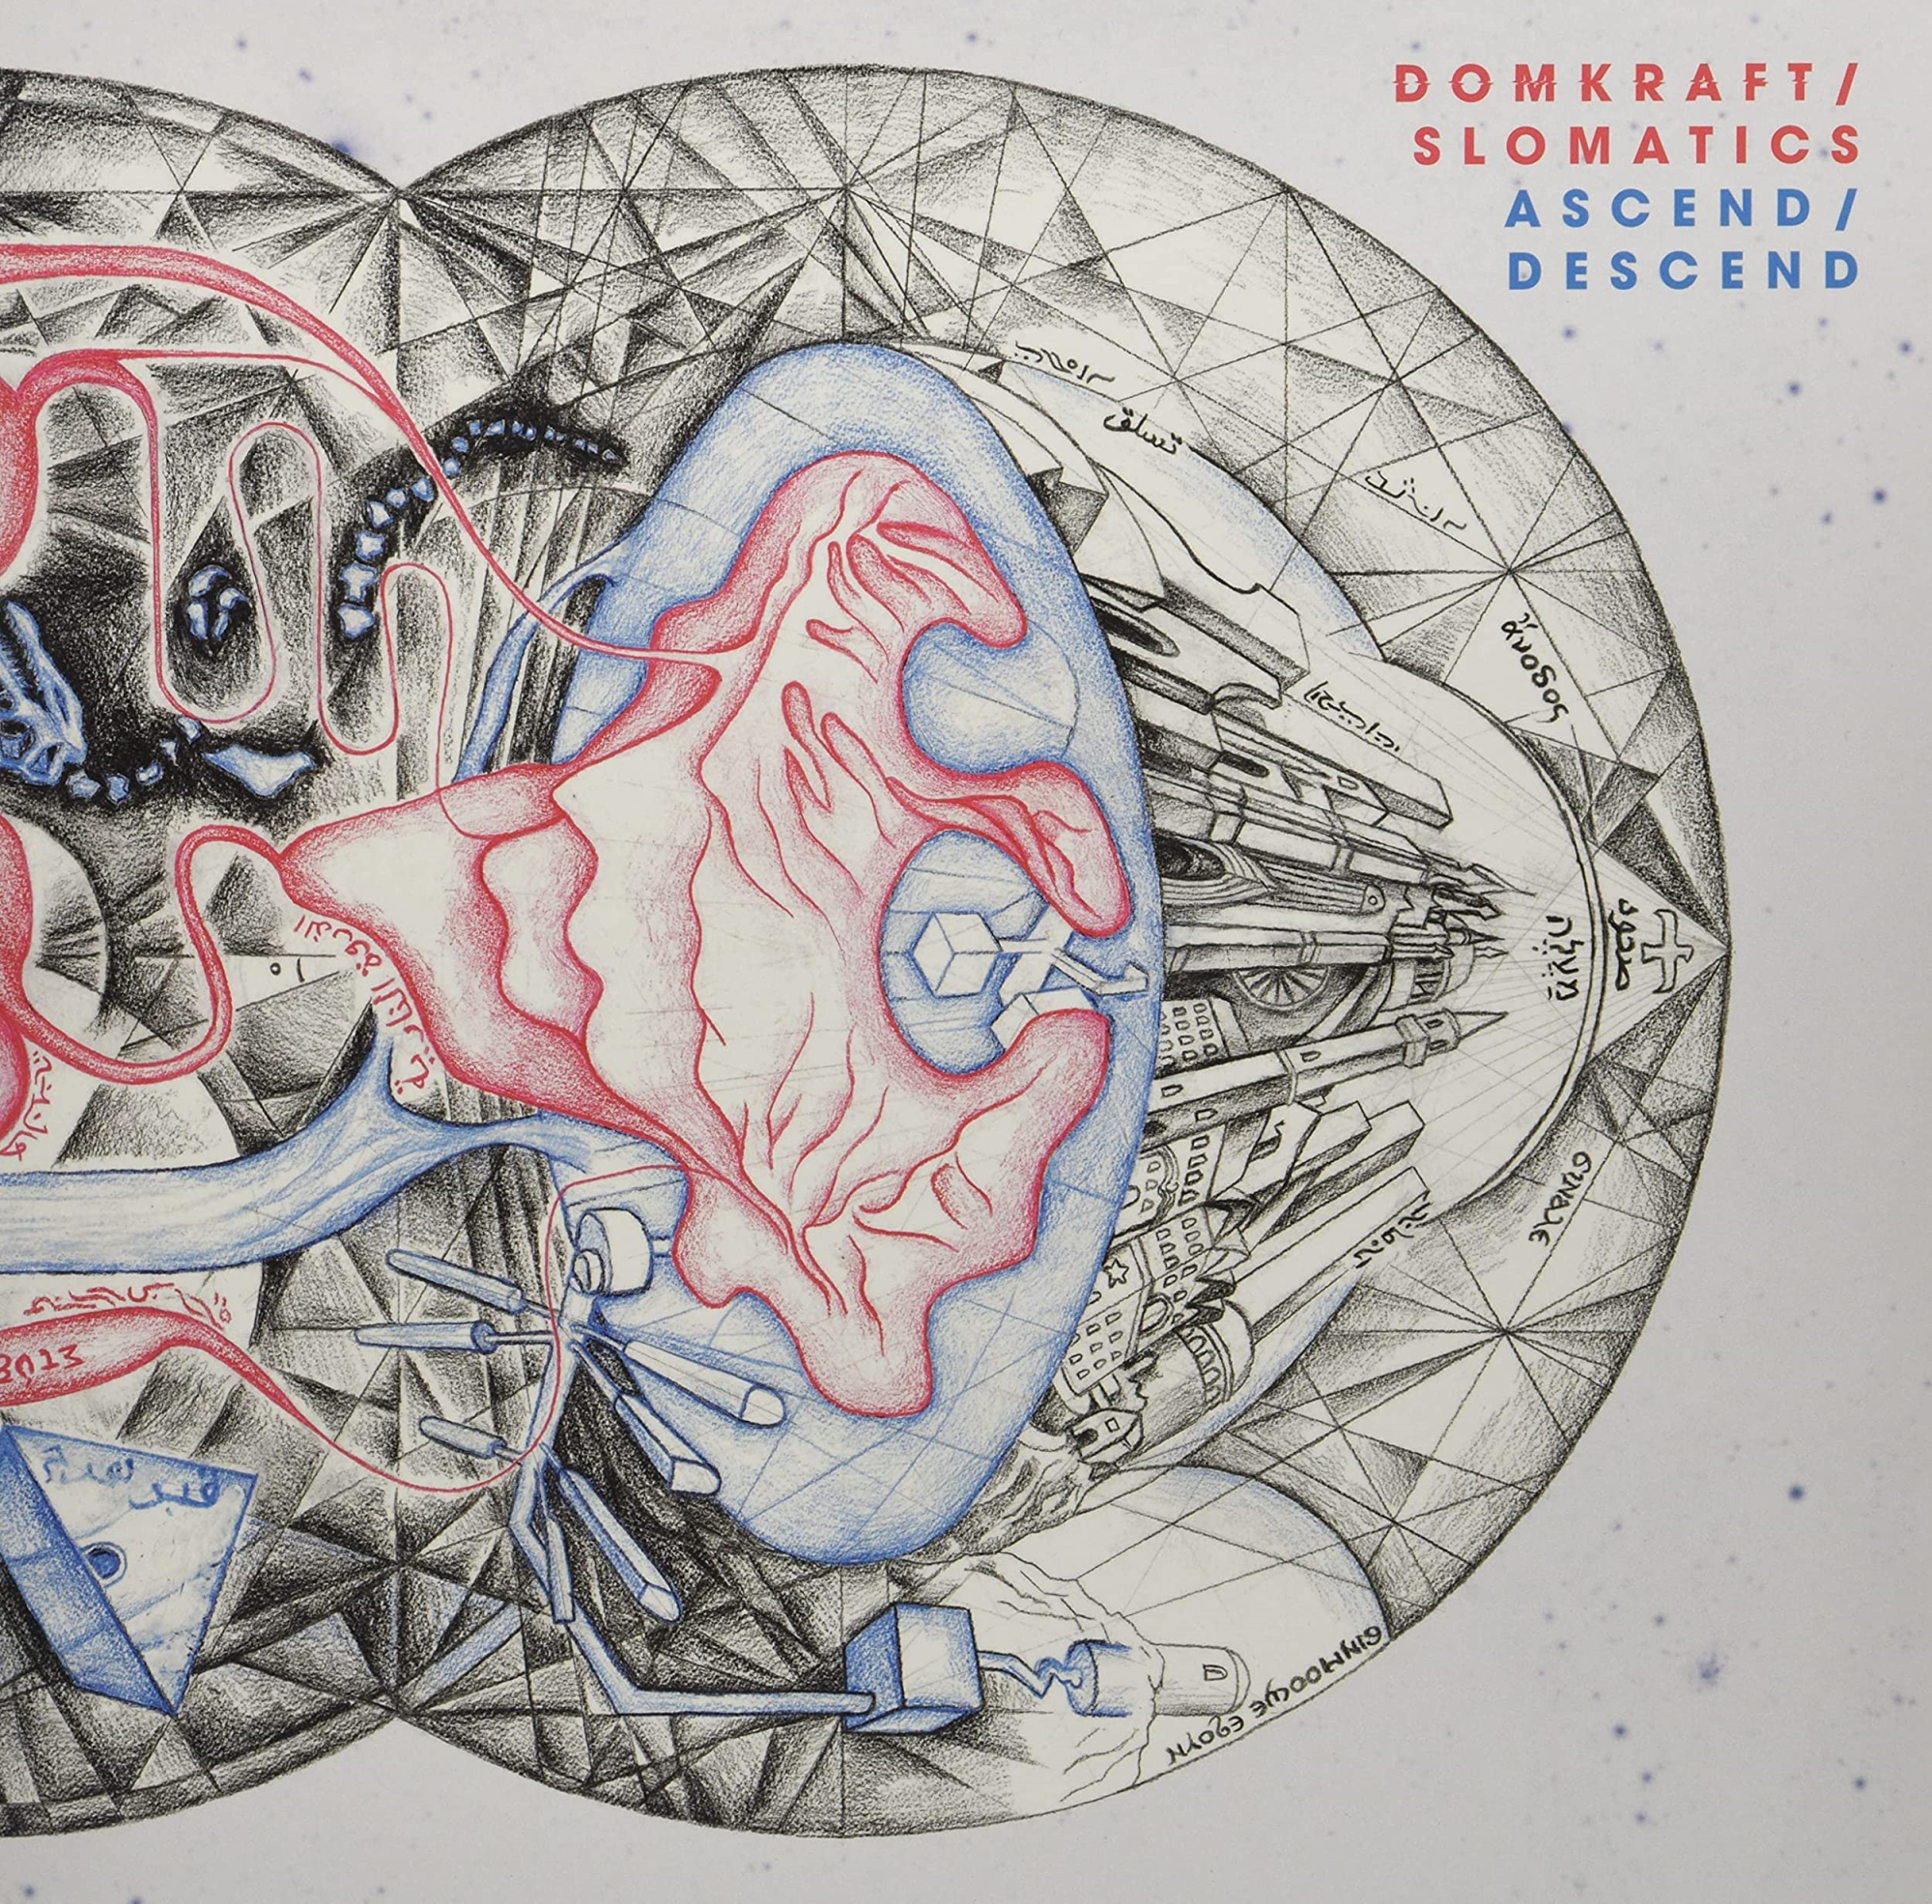 Vinile Domkraft / Slomatics - Ascend / Descend (Red/White Vinyl) NUOVO SIGILLATO, EDIZIONE DEL 13/06/2022 SUBITO DISPONIBILE